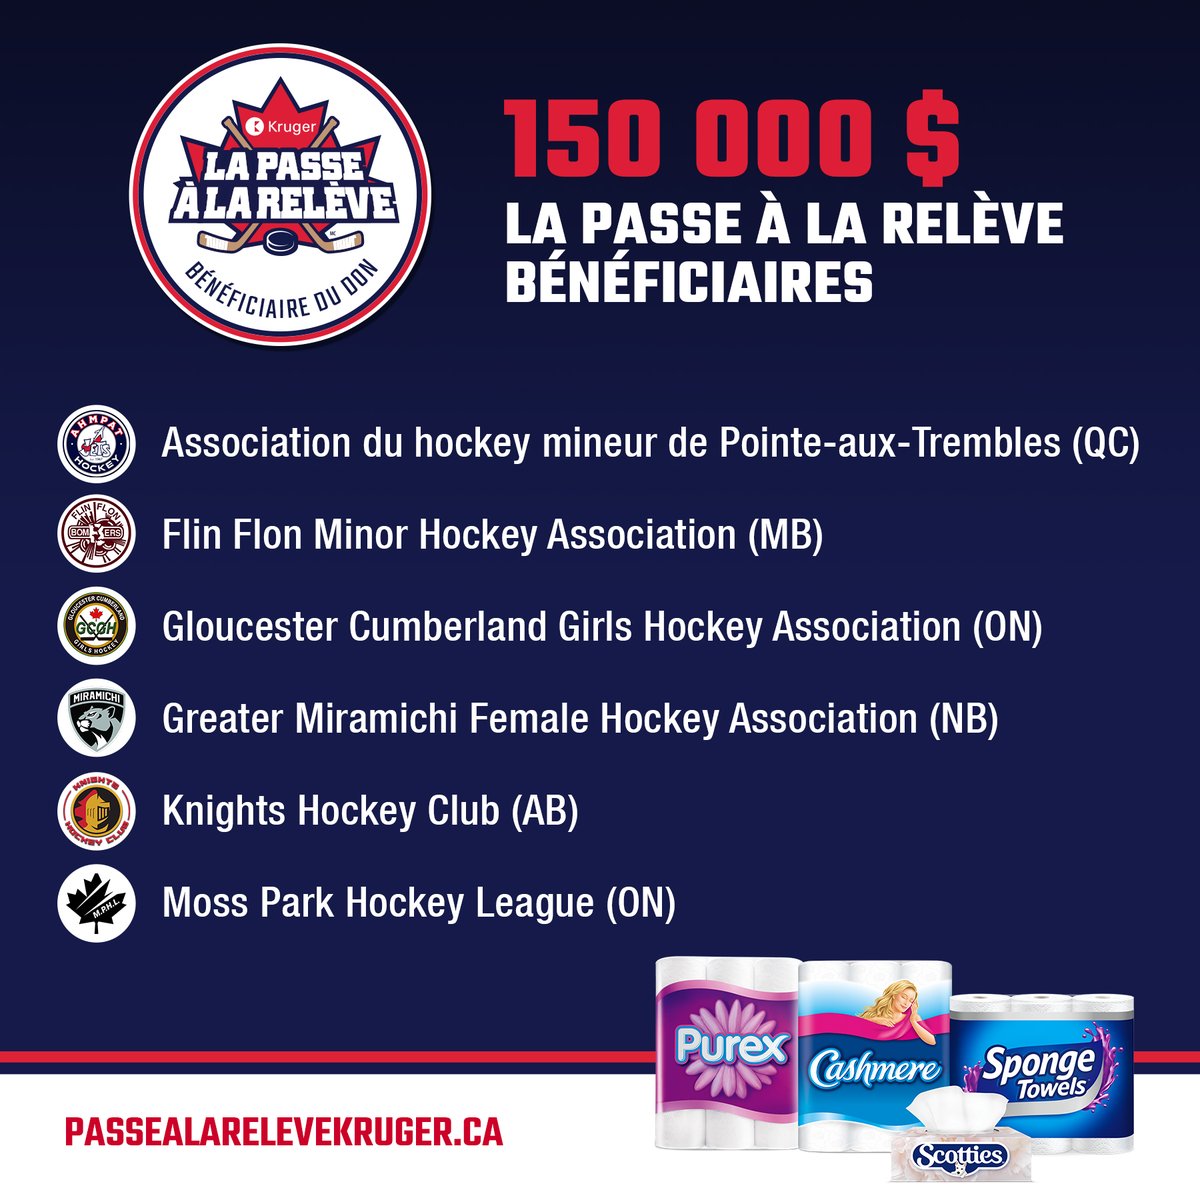 Félicitations aux gagnants de la 3e édition du programme annuel de la #PasseÀLaRelèveKruger! Cette année, nous avons remis 150 000 $ à six associations canadiennes de hockey afin d'aider un plus grand nombre d'enfants à se rendre sur la glace. En lire plus bit.ly/3G3BQ2t